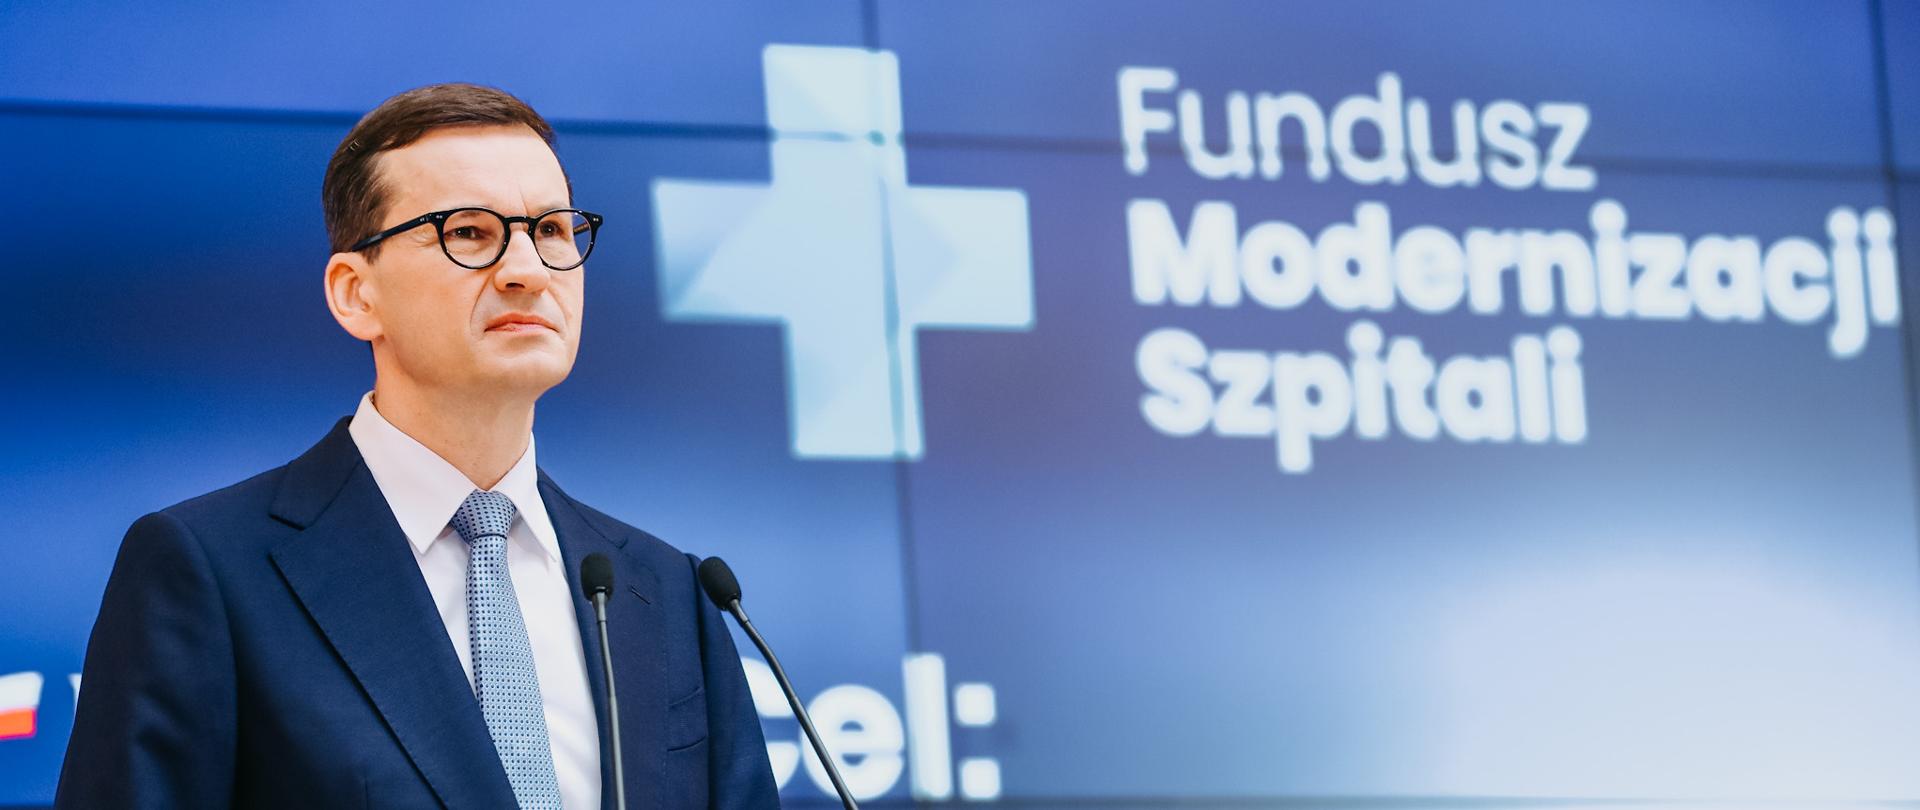 Na zdjęciu przemawiający premier Mateusz Morawiecki